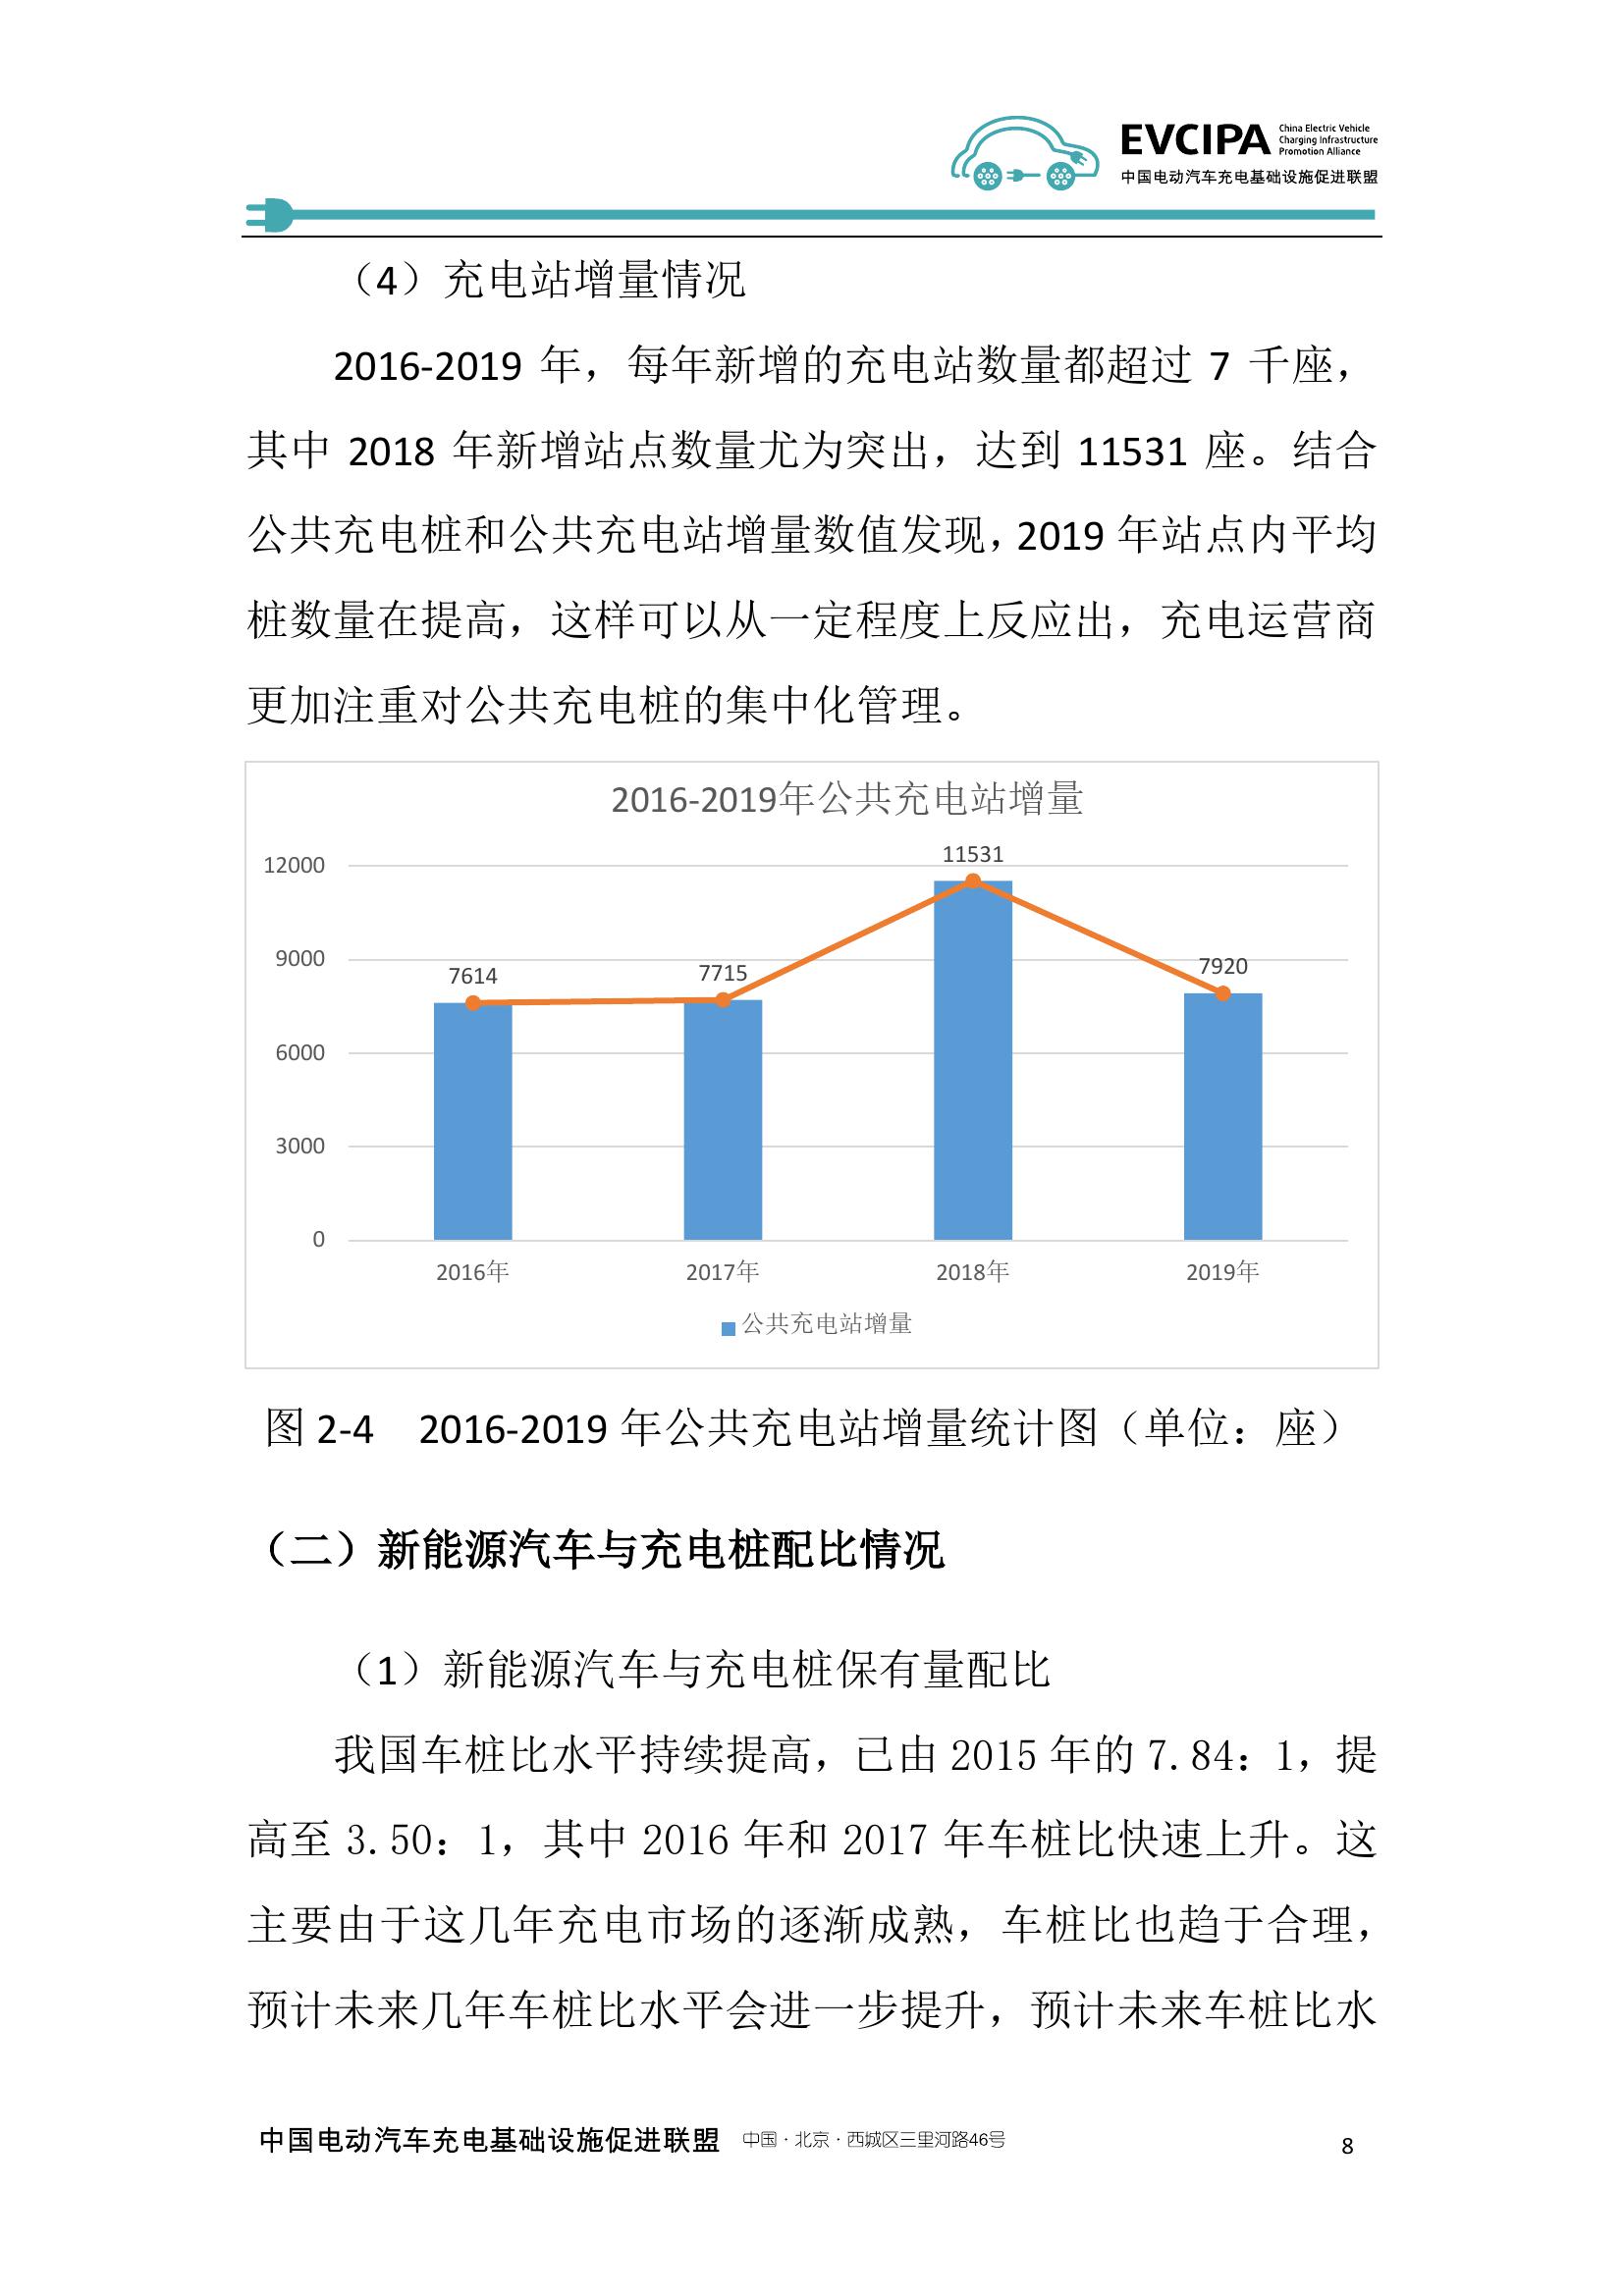 2019-2020年度中国充电基础设施发展报告_000016.jpg